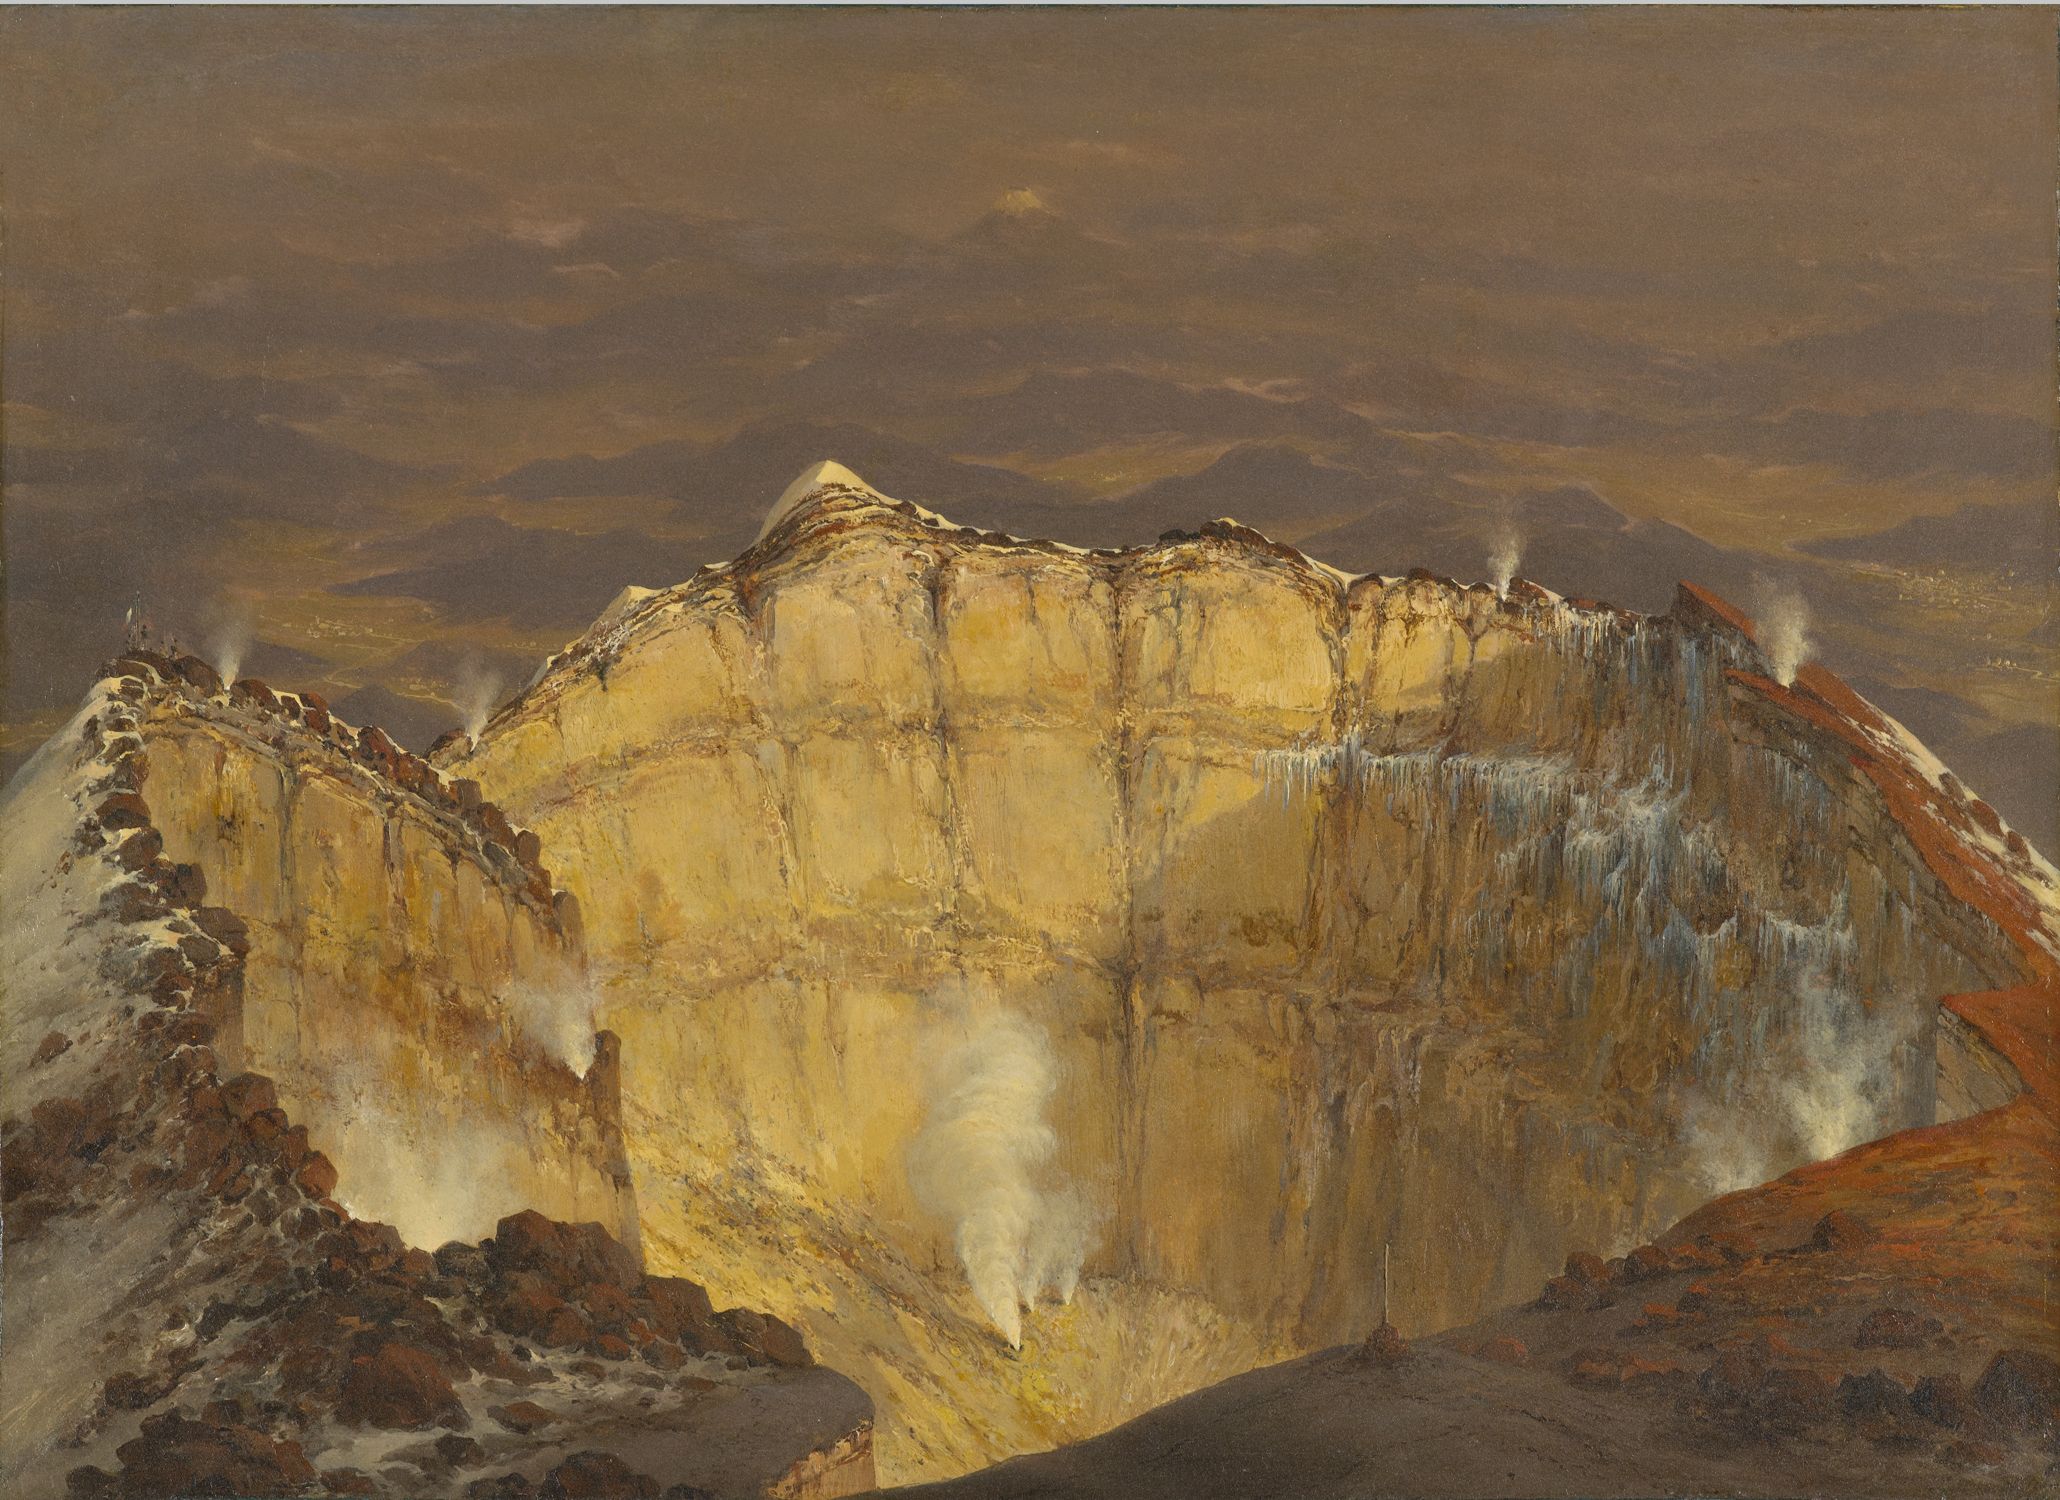 Cráter del Popocatépetl by Jean-Baptiste Louis Gros - 1833 - 30,5 x 43,2 cm Museo de Arte de Carolina del Norte